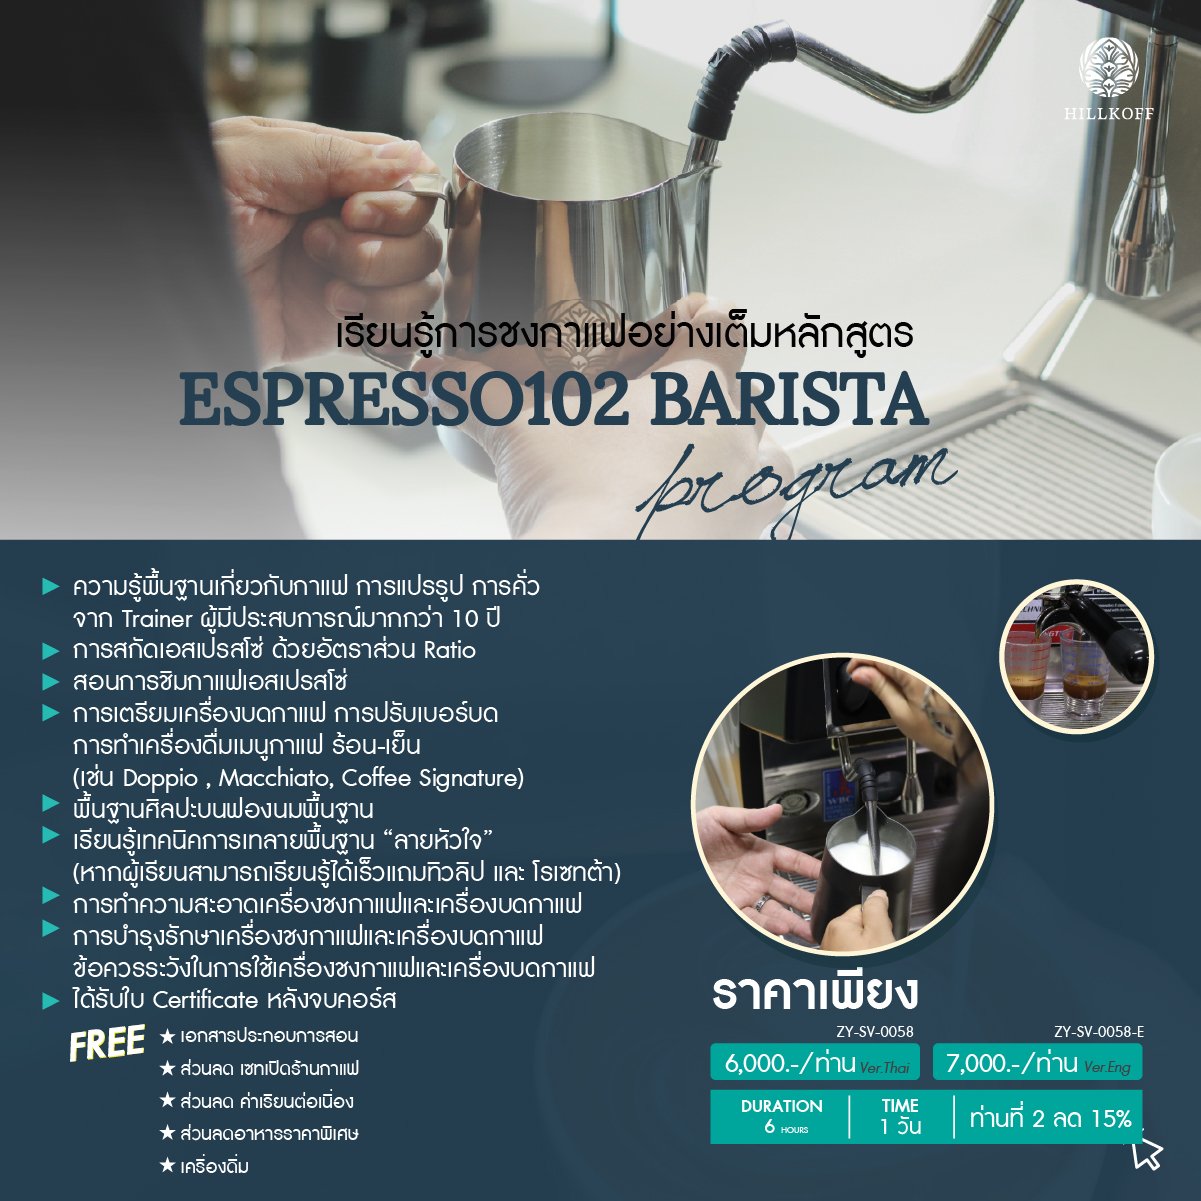 คอร์สเรียน การชงกาแฟอย่างเต็มหลักสูตร (ESPRESSO102) สถานที่: เชียงใหม่